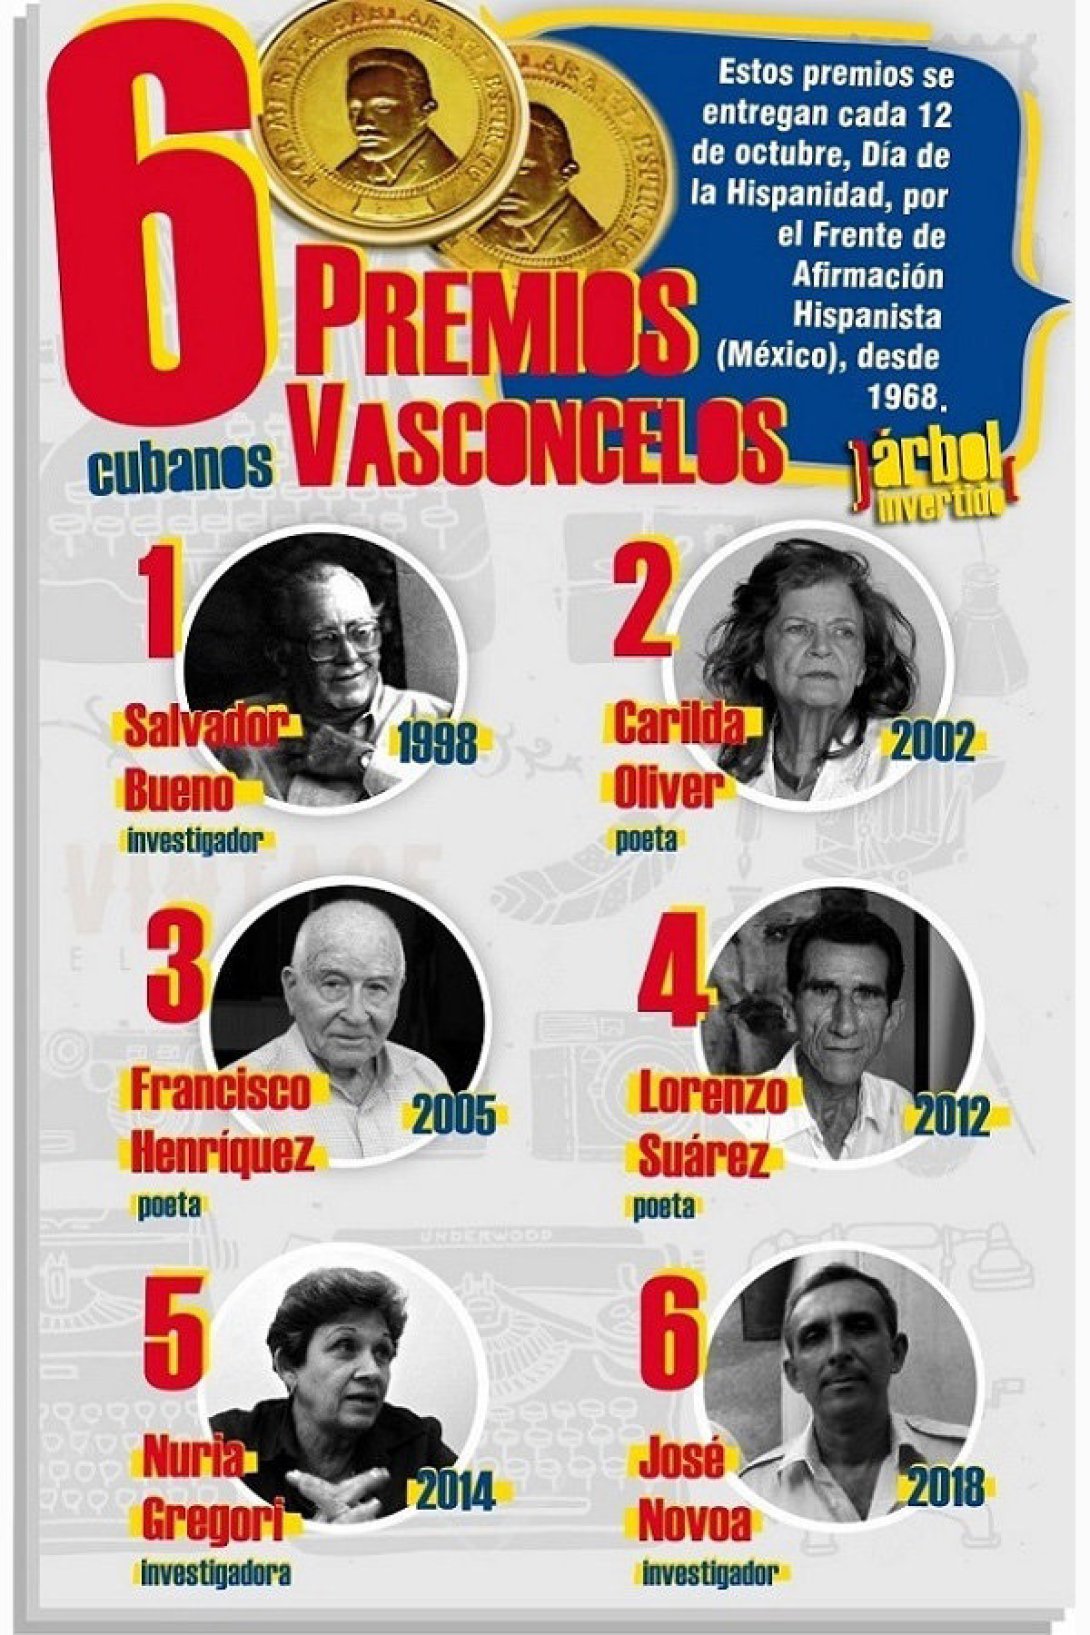 Infografía. Los seis cubanos que han ganado el Premio Vasconcelos